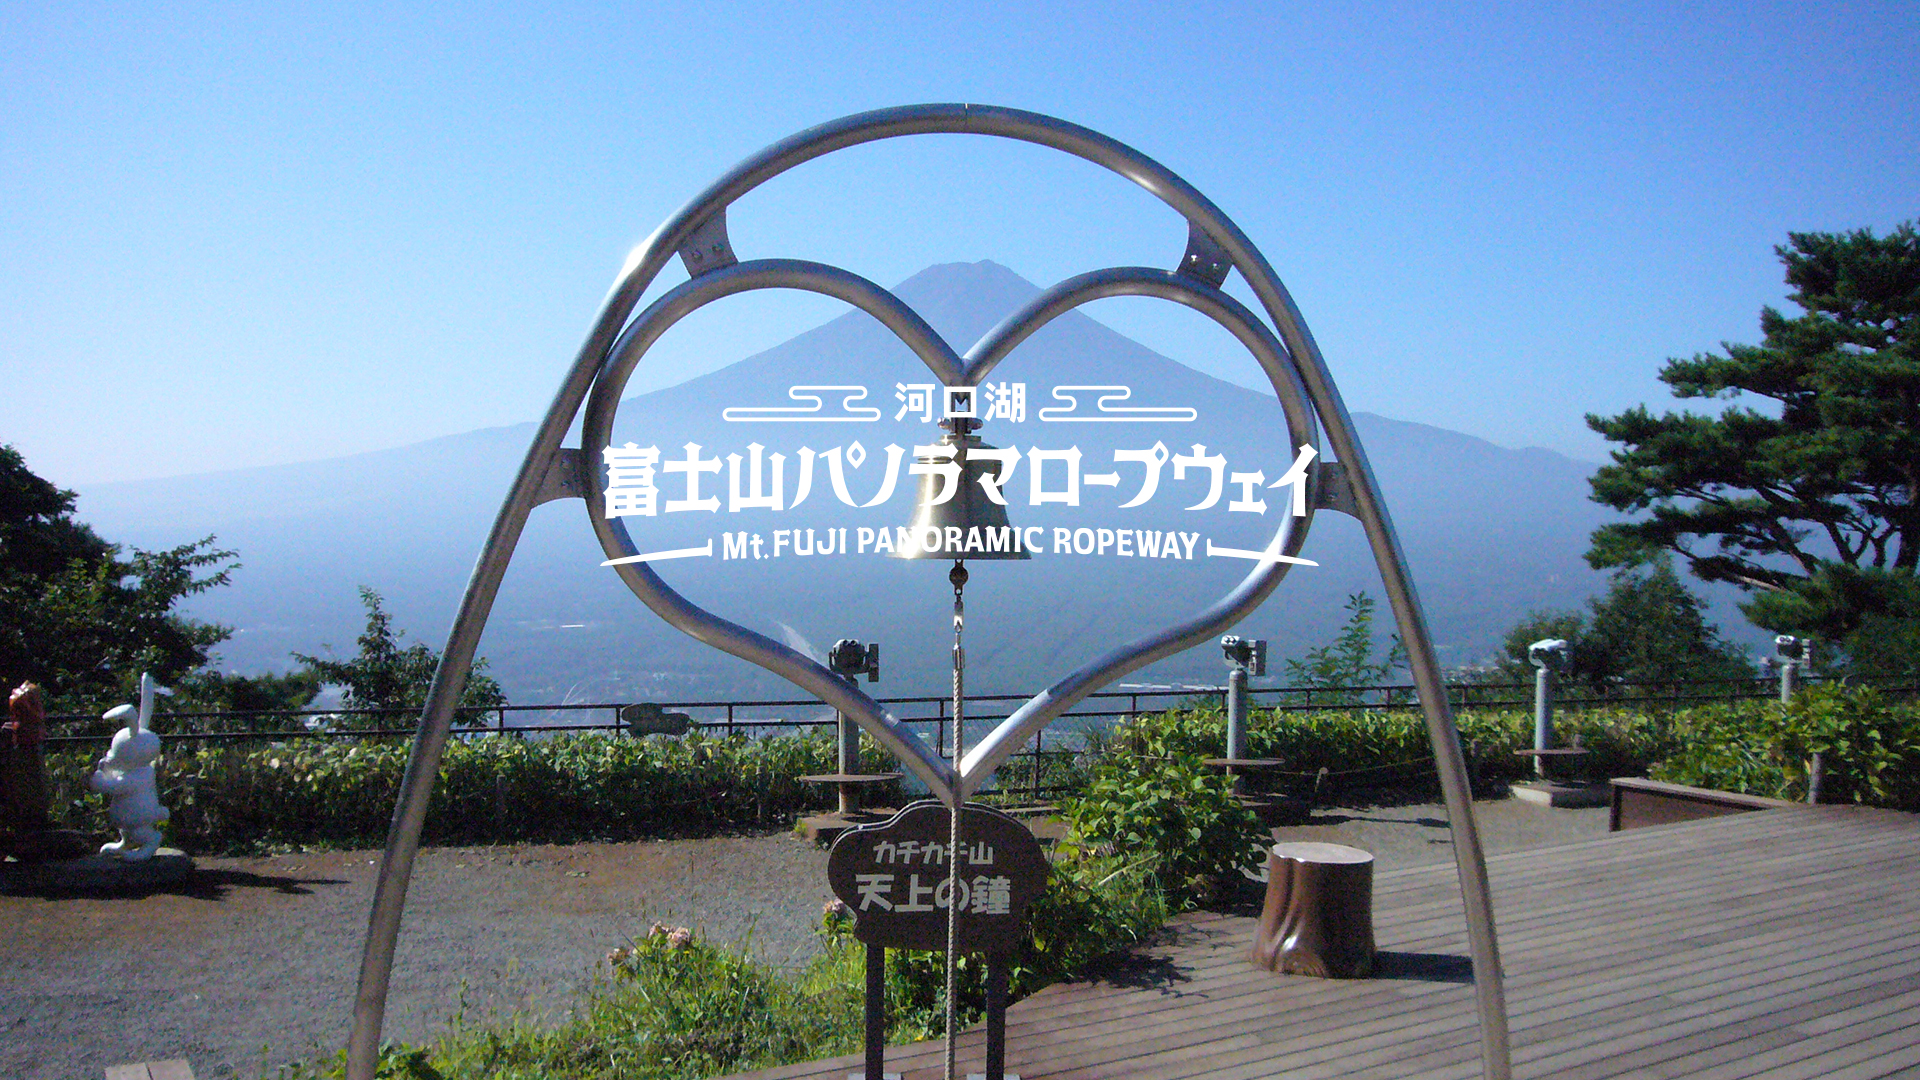 河口湖 富士山パノラマロープウェイ Mt.FUJI PANORAMIC ROPEWAY